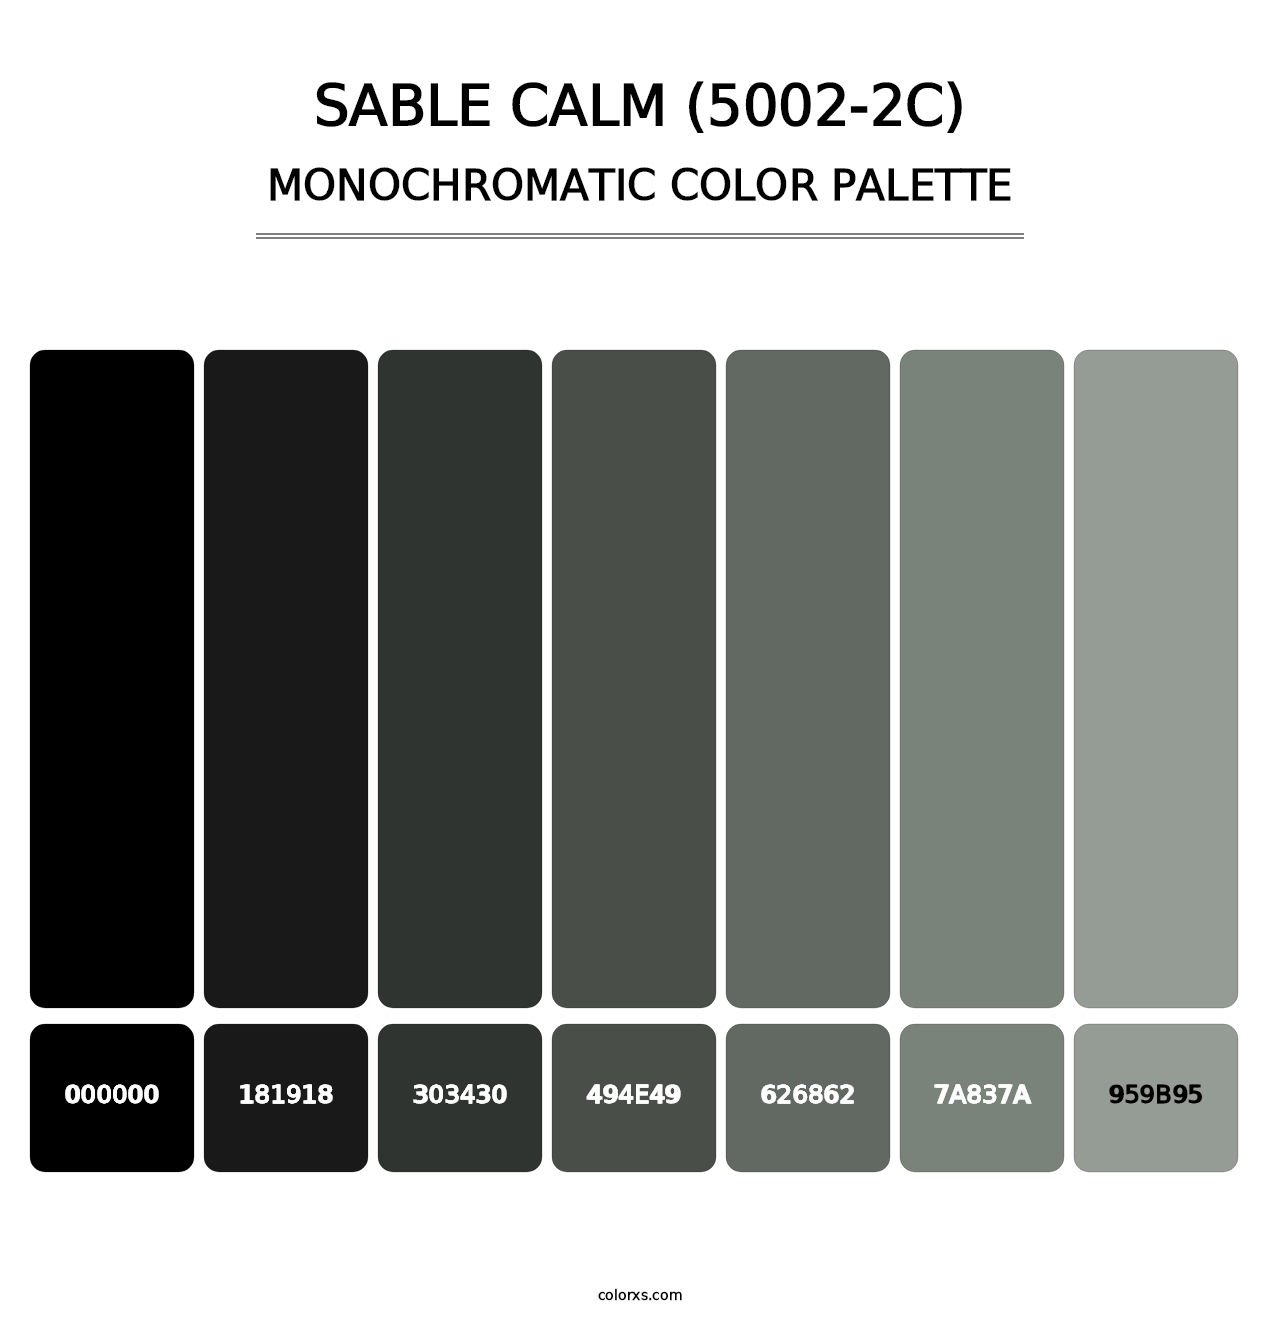 Sable Calm (5002-2C) - Monochromatic Color Palette